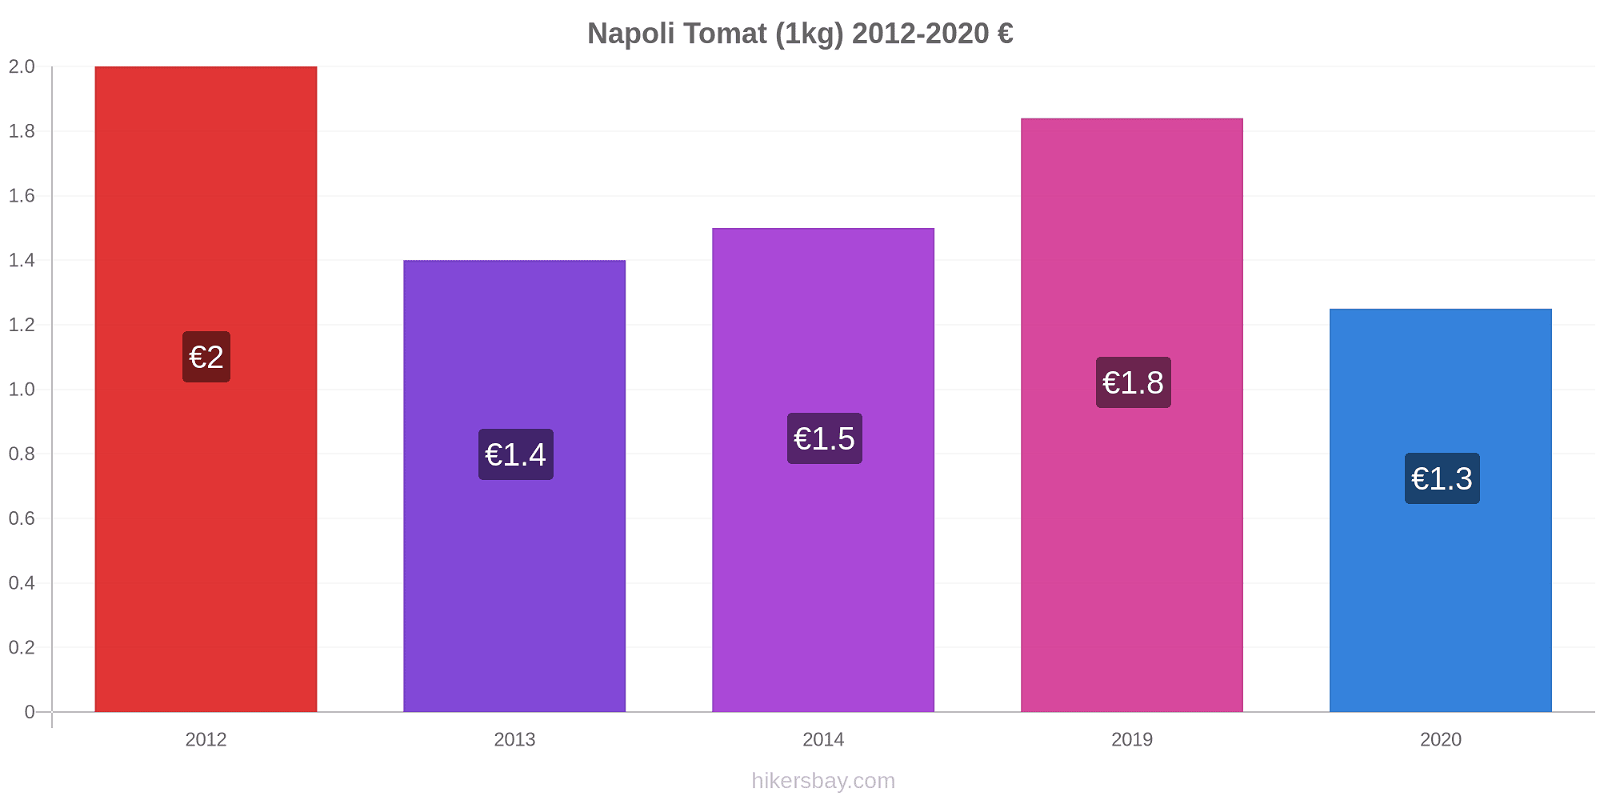 Napoli prisændringer Tomat (1kg) hikersbay.com